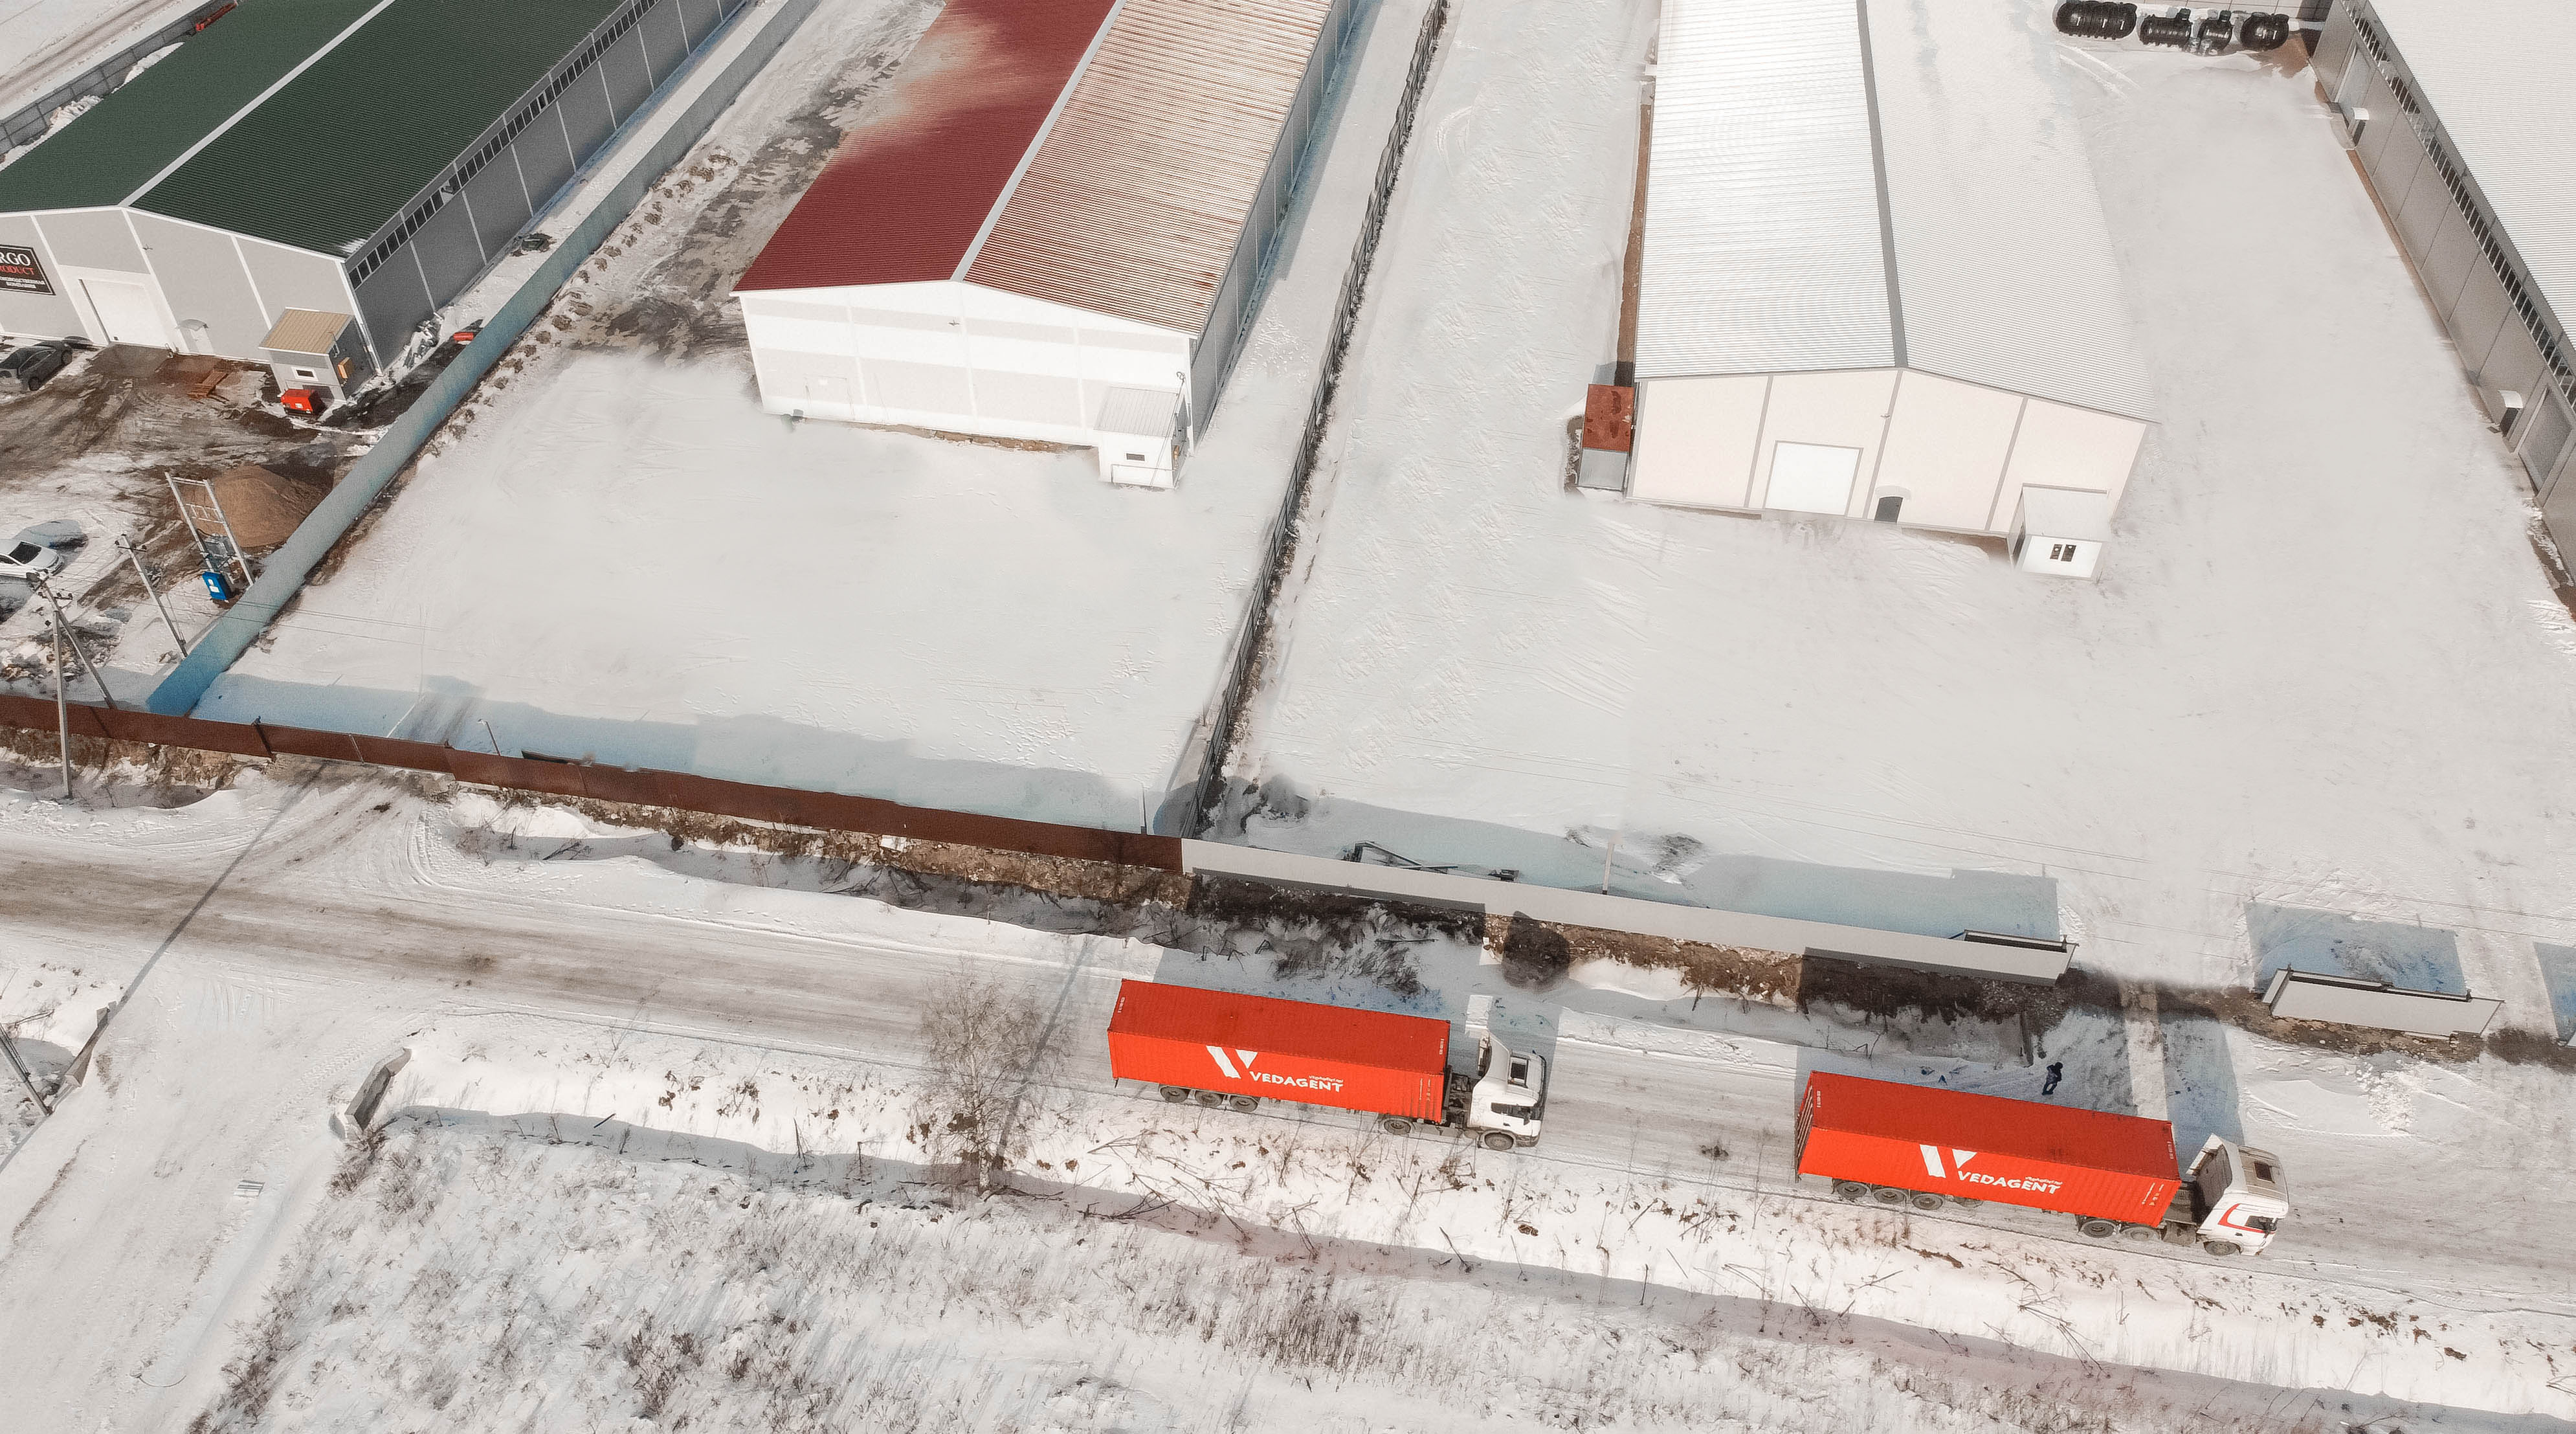 Фотография хорошо убраной дороги в Технопарке Фёдоровское с проезжающими по ней двумя большими ярко оранжевыми фурами. Фото снято зимой с квадрокоптера